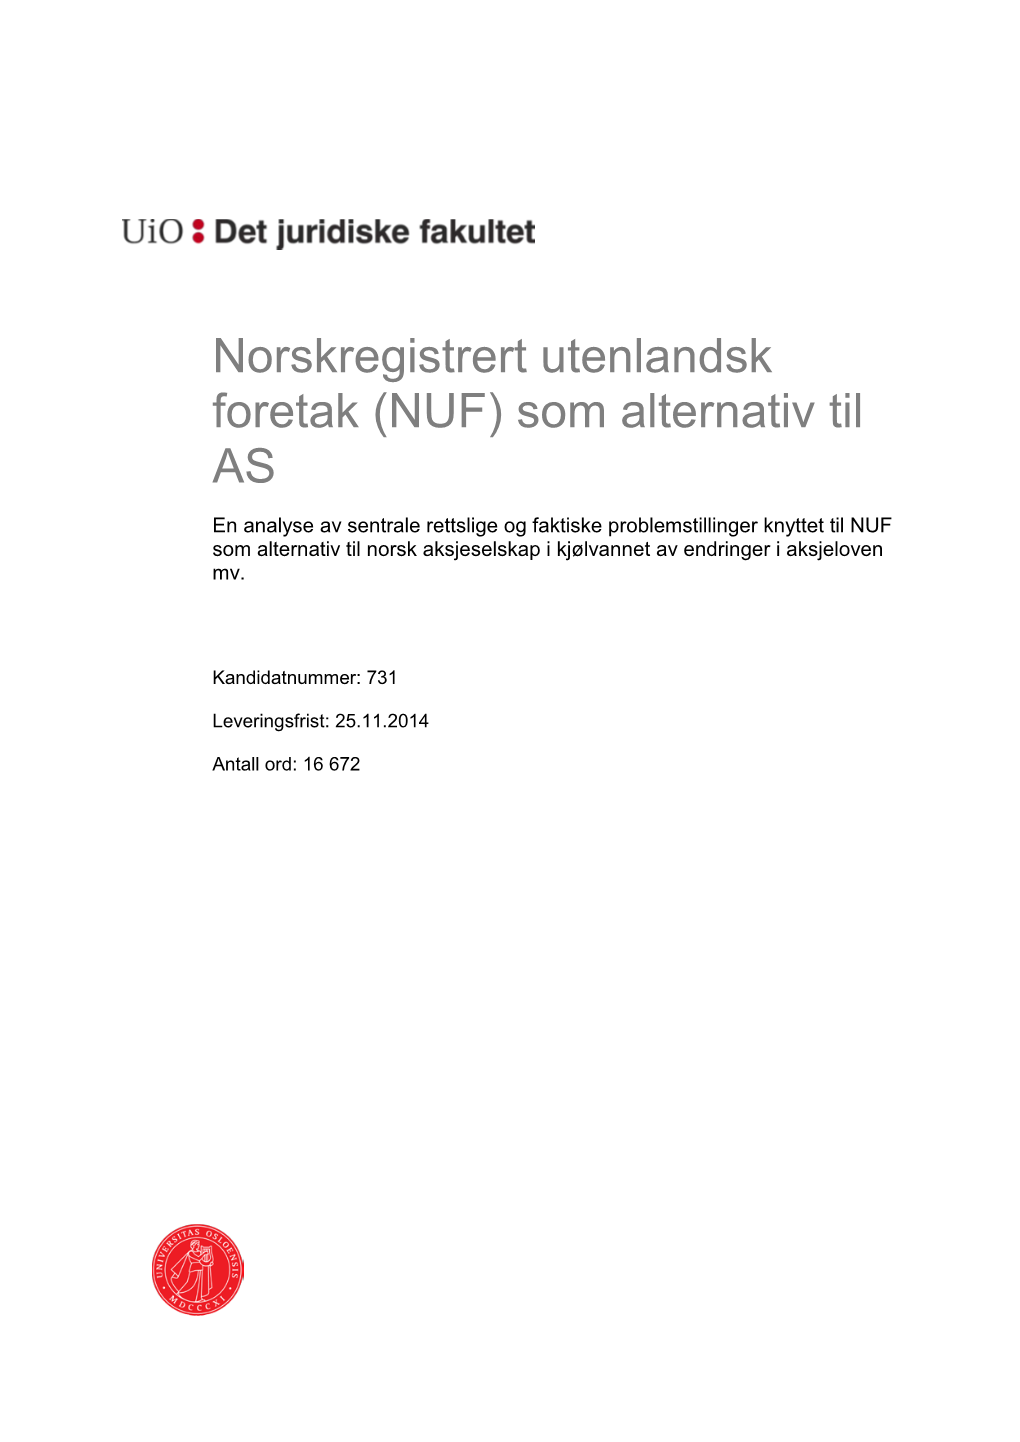 Norskregistrert Utenlandsk Foretak (NUF)